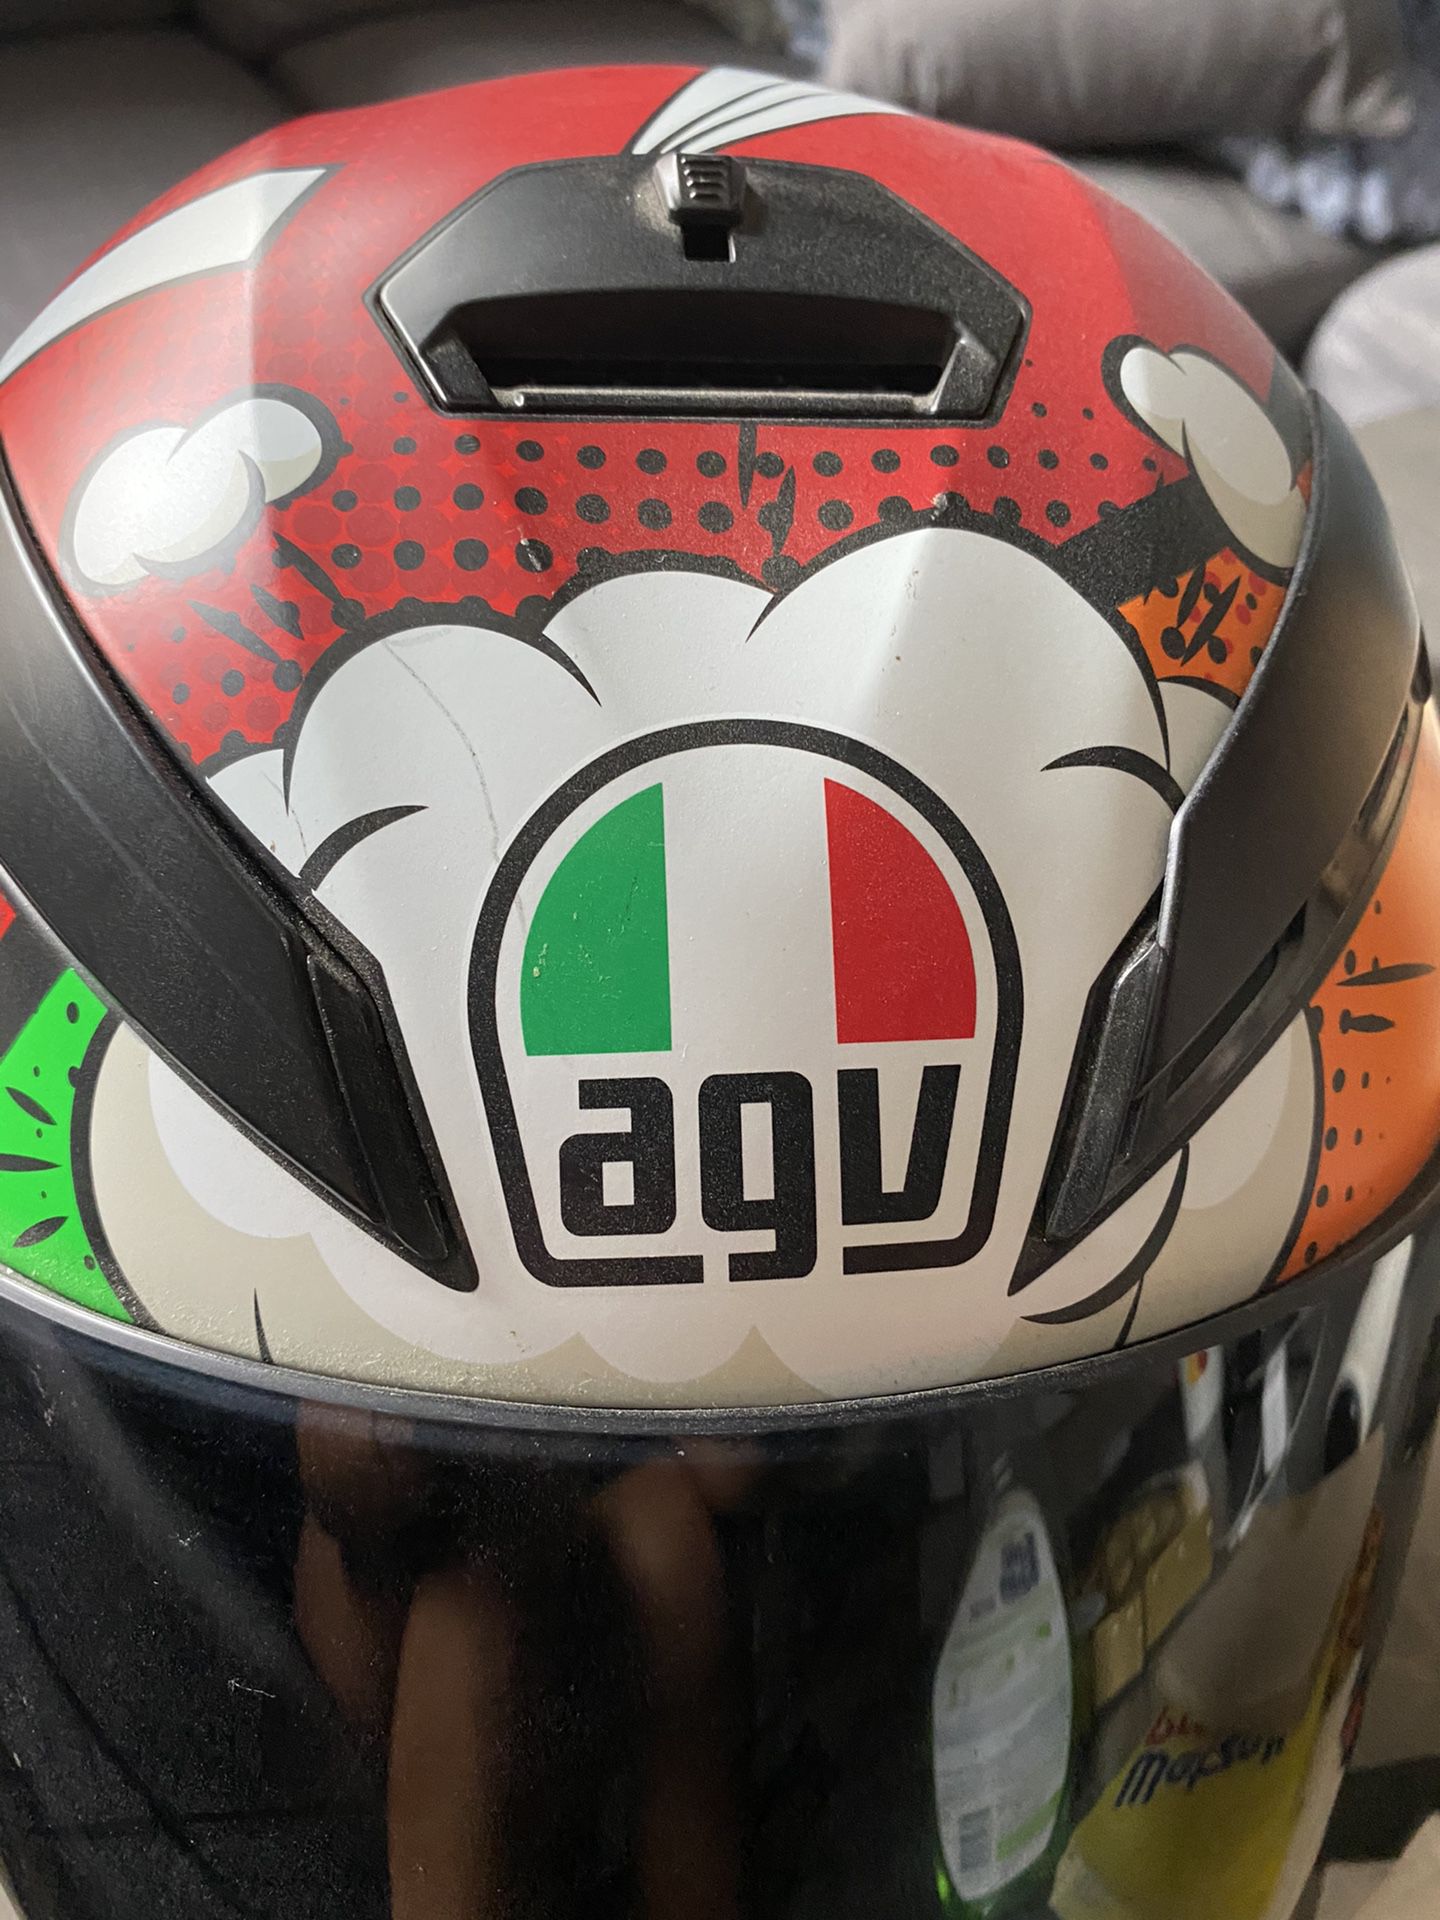 AGV motorcycle helmet